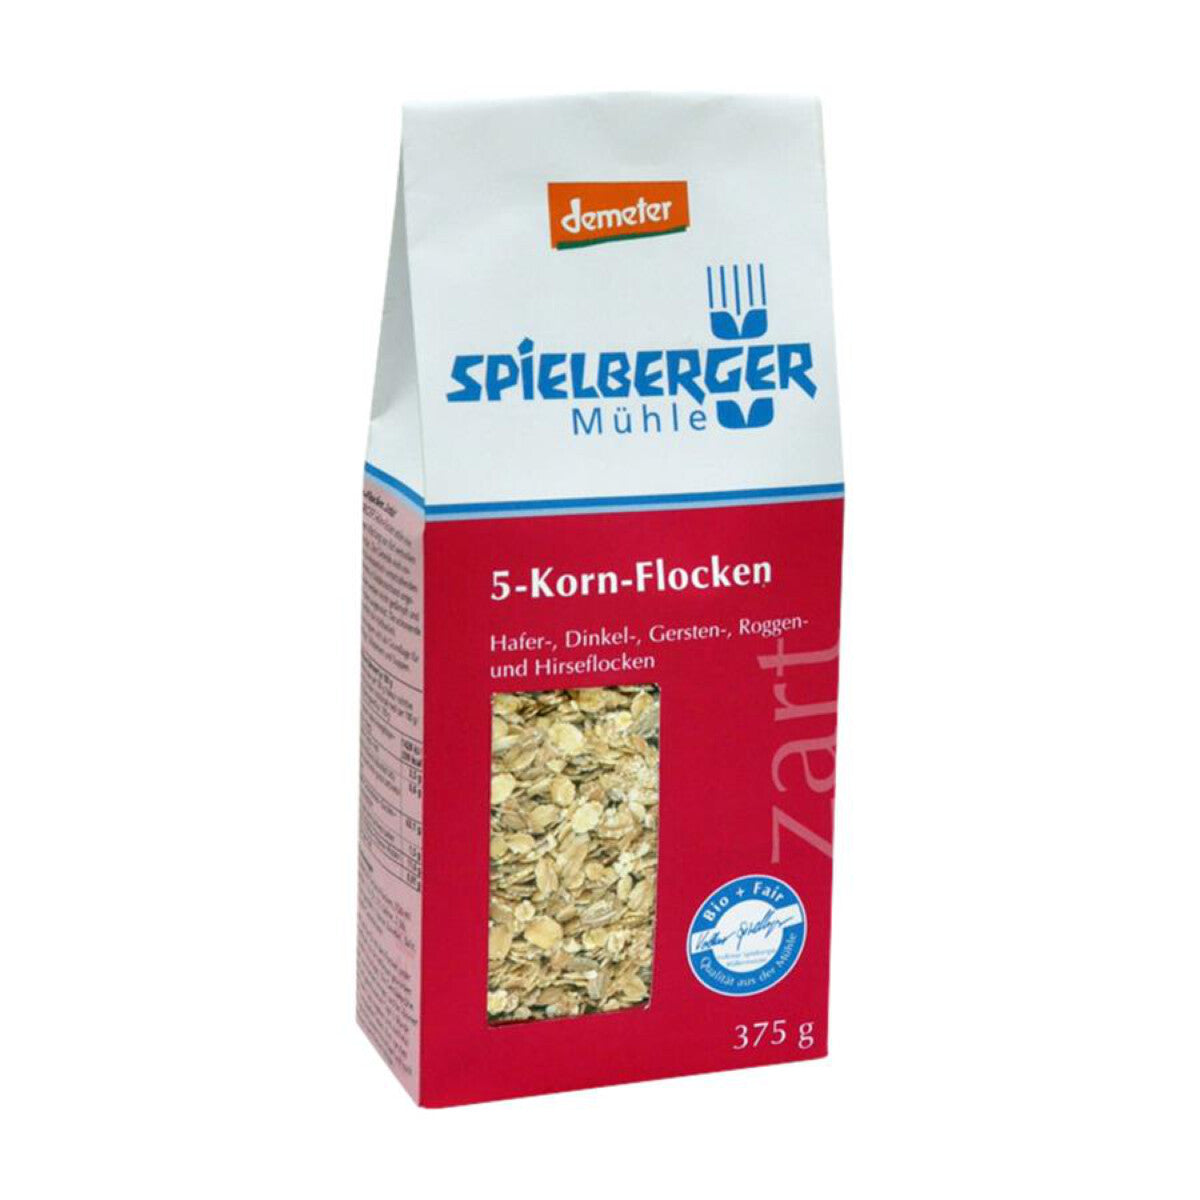 SPIELBERGER MÜHLE 5-Korn-Flocken Zartblatt - 375 g